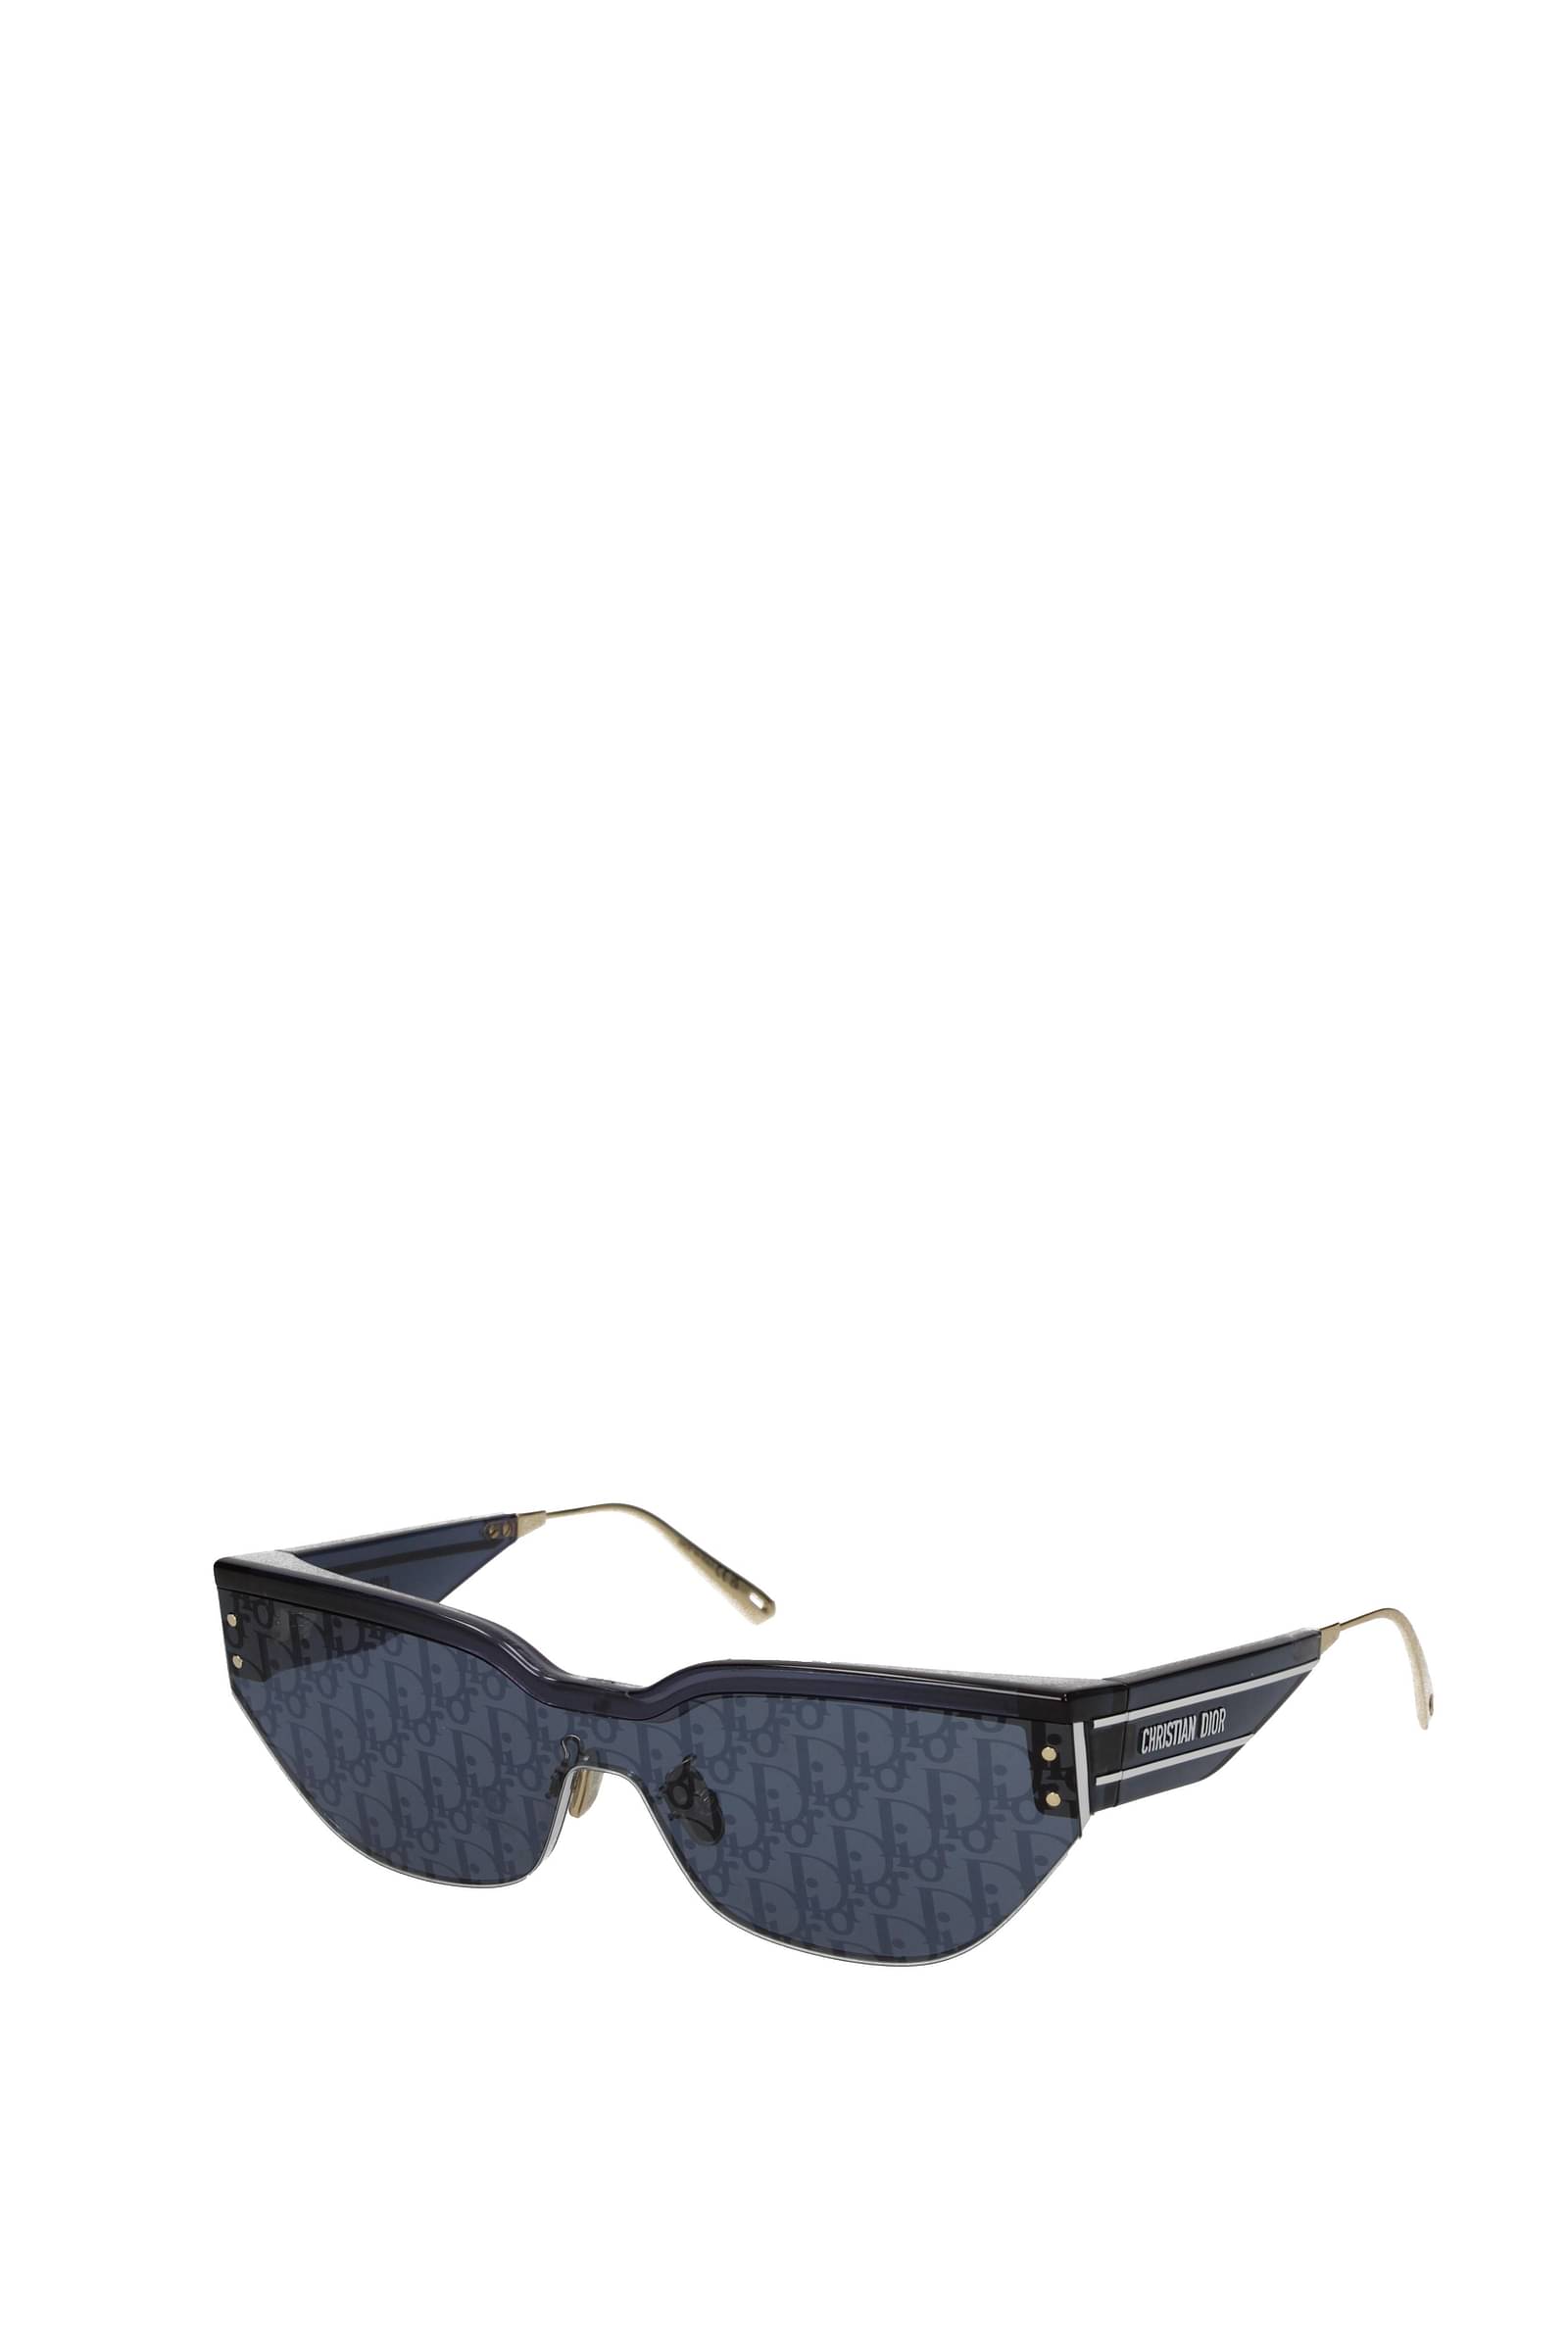 DIOR DiorClub M1U 31B8 59 Silver DiorOblique  Blue Sunglasses  Sunglass  Hut USA